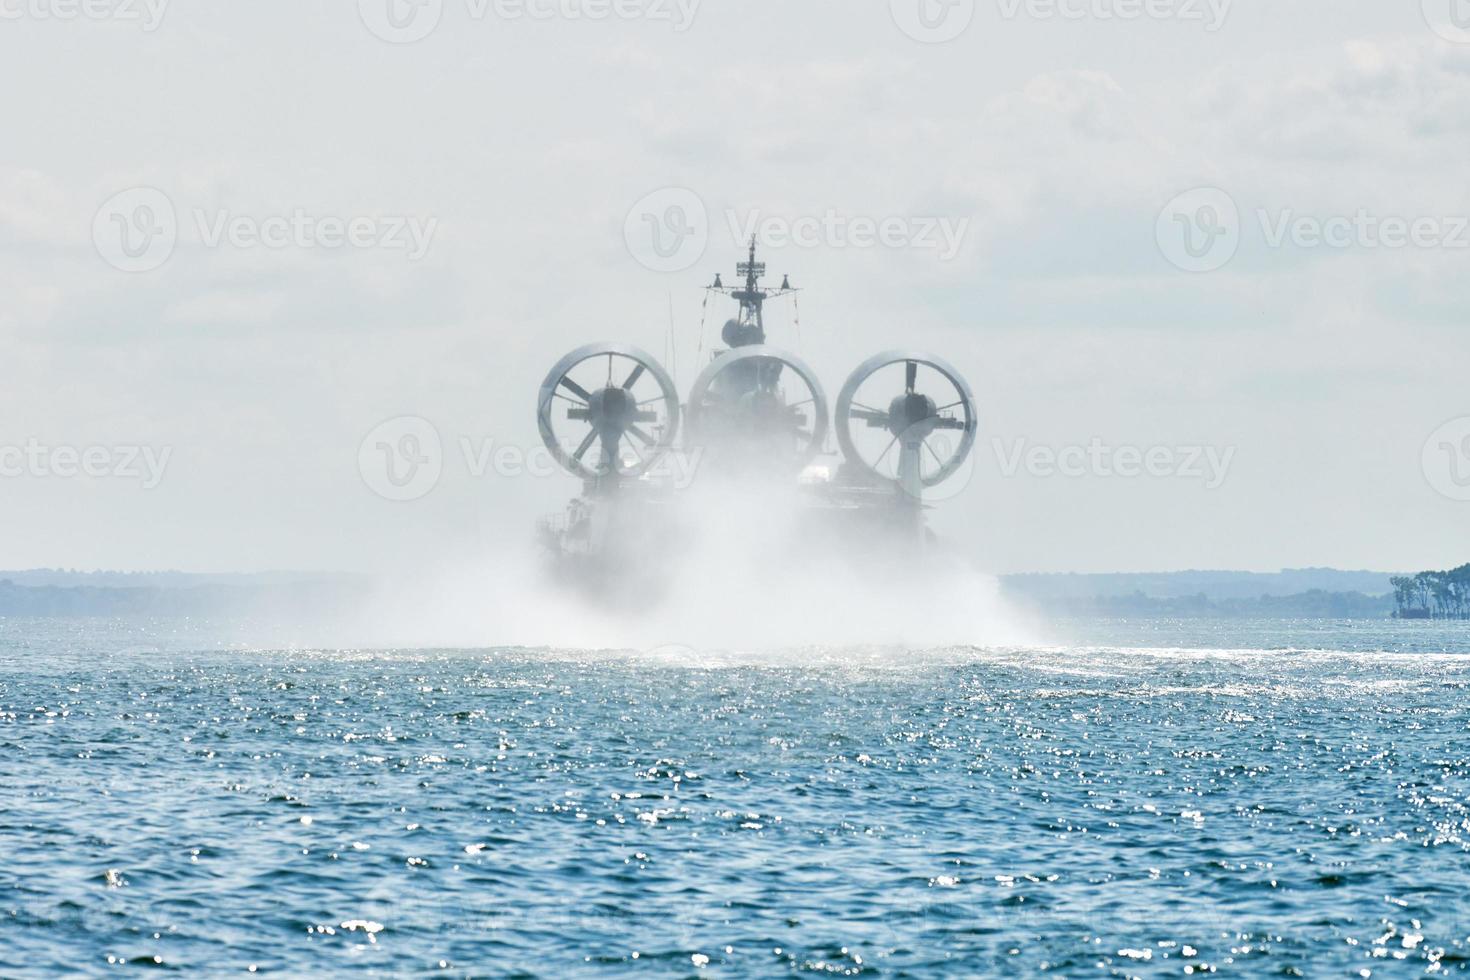 péniche de débarquement aéroglisseur à coussin d'air volant au-dessus de l'eau, voile à coussin d'air éclaboussant l'eau de mer photo